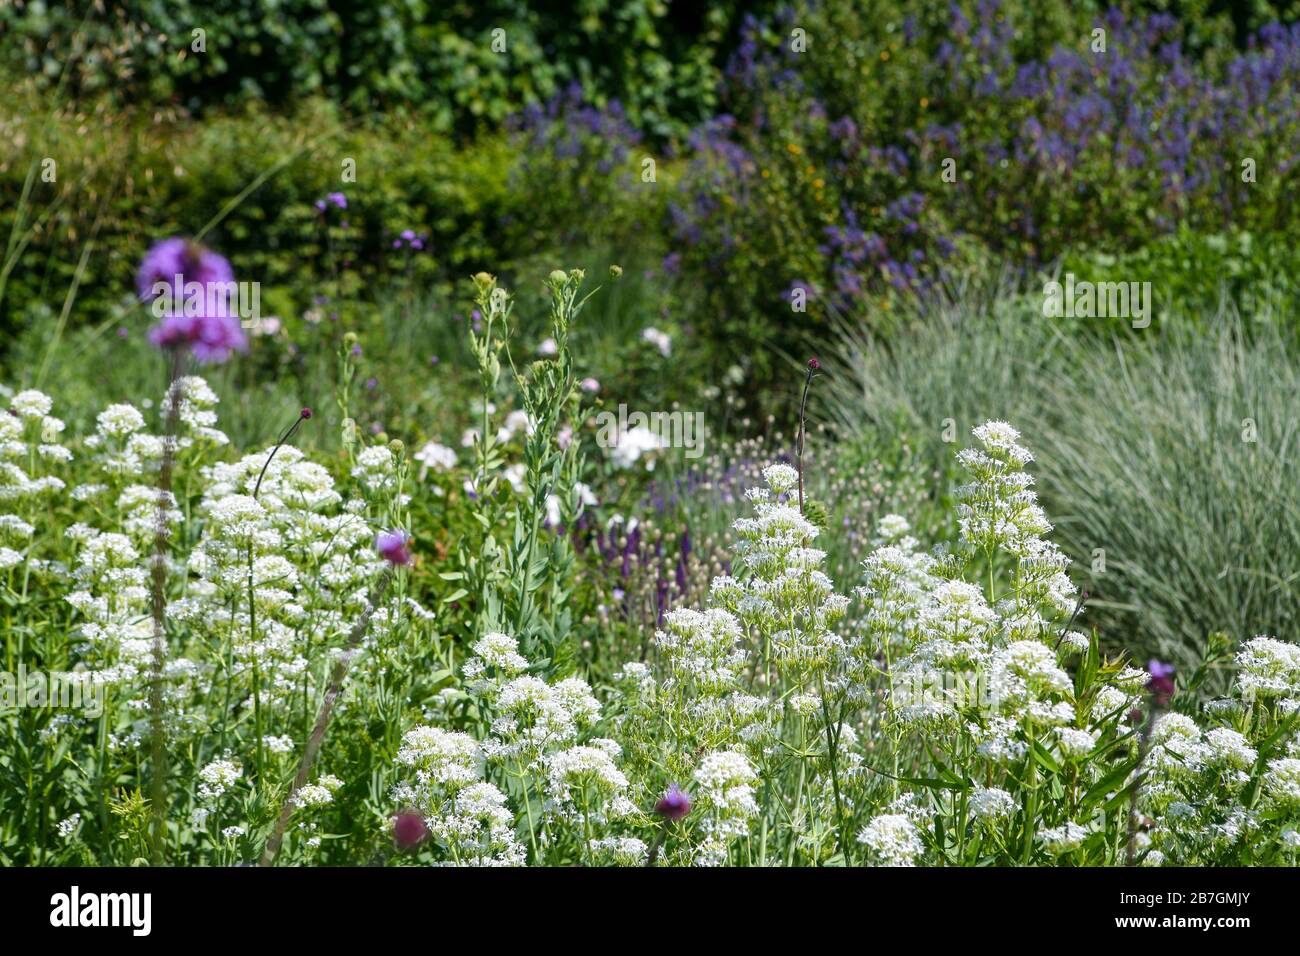 Centranthus ruber 'Albus' in einem weißen, silbernen, violetten und blauen Bepflanzungsschema, große Staudengrenze in einem Garten Stockfoto